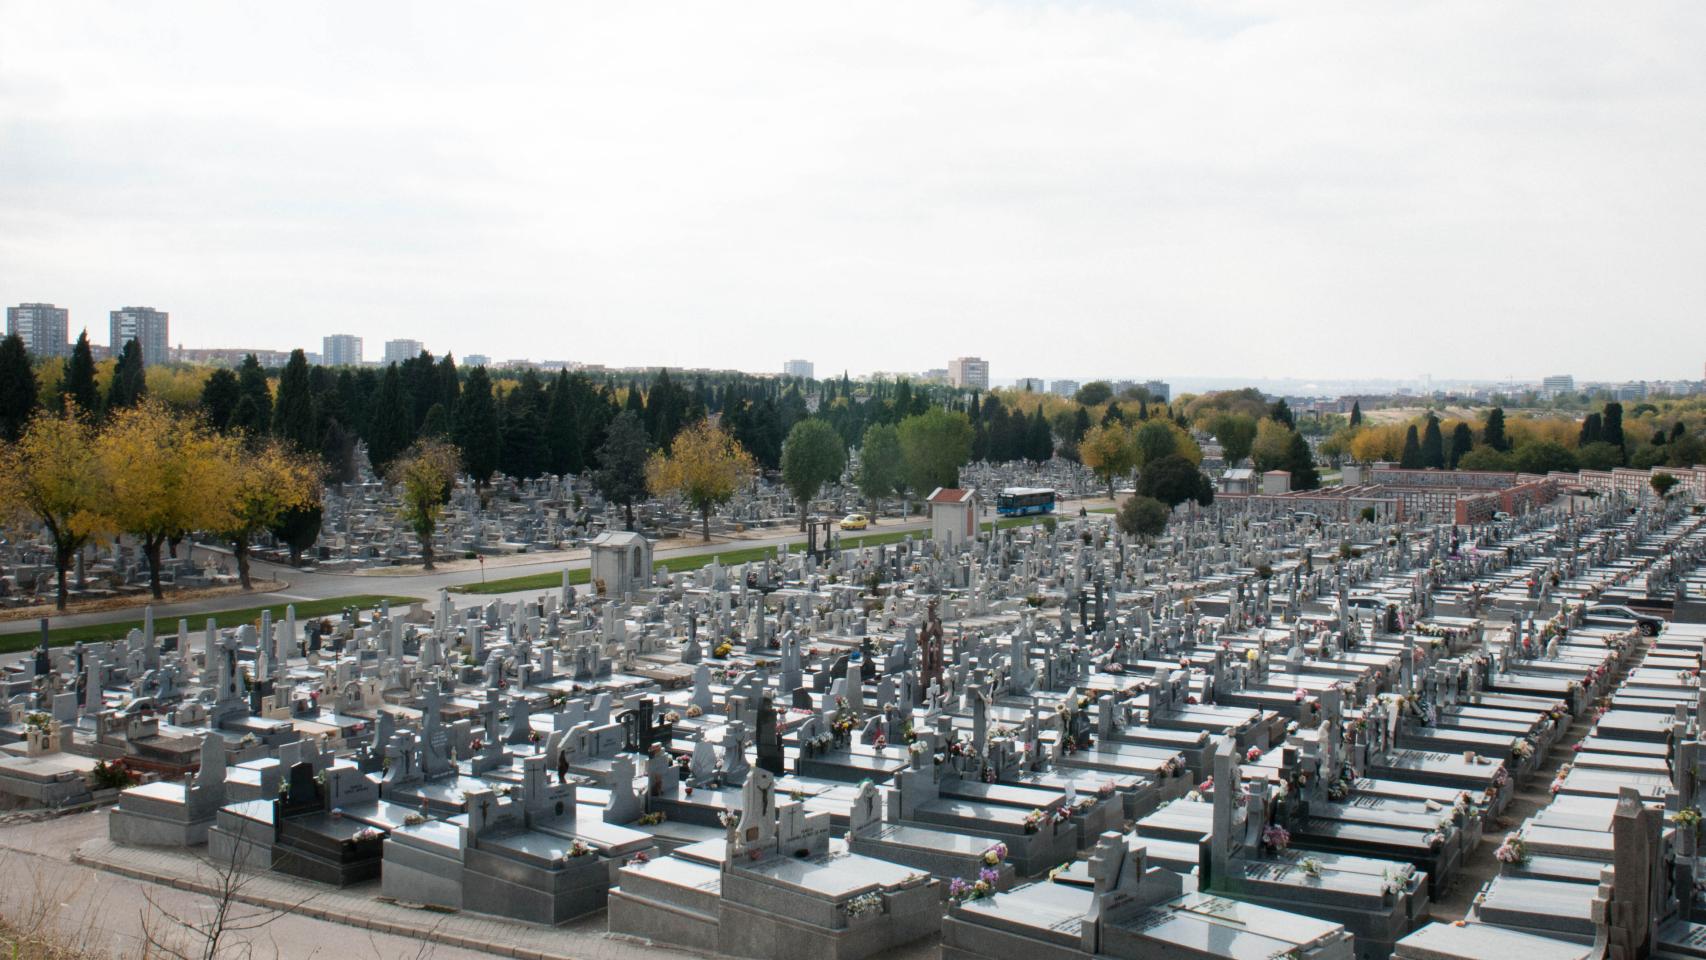 Vista general del cementerio de la Almudena, Madrid.